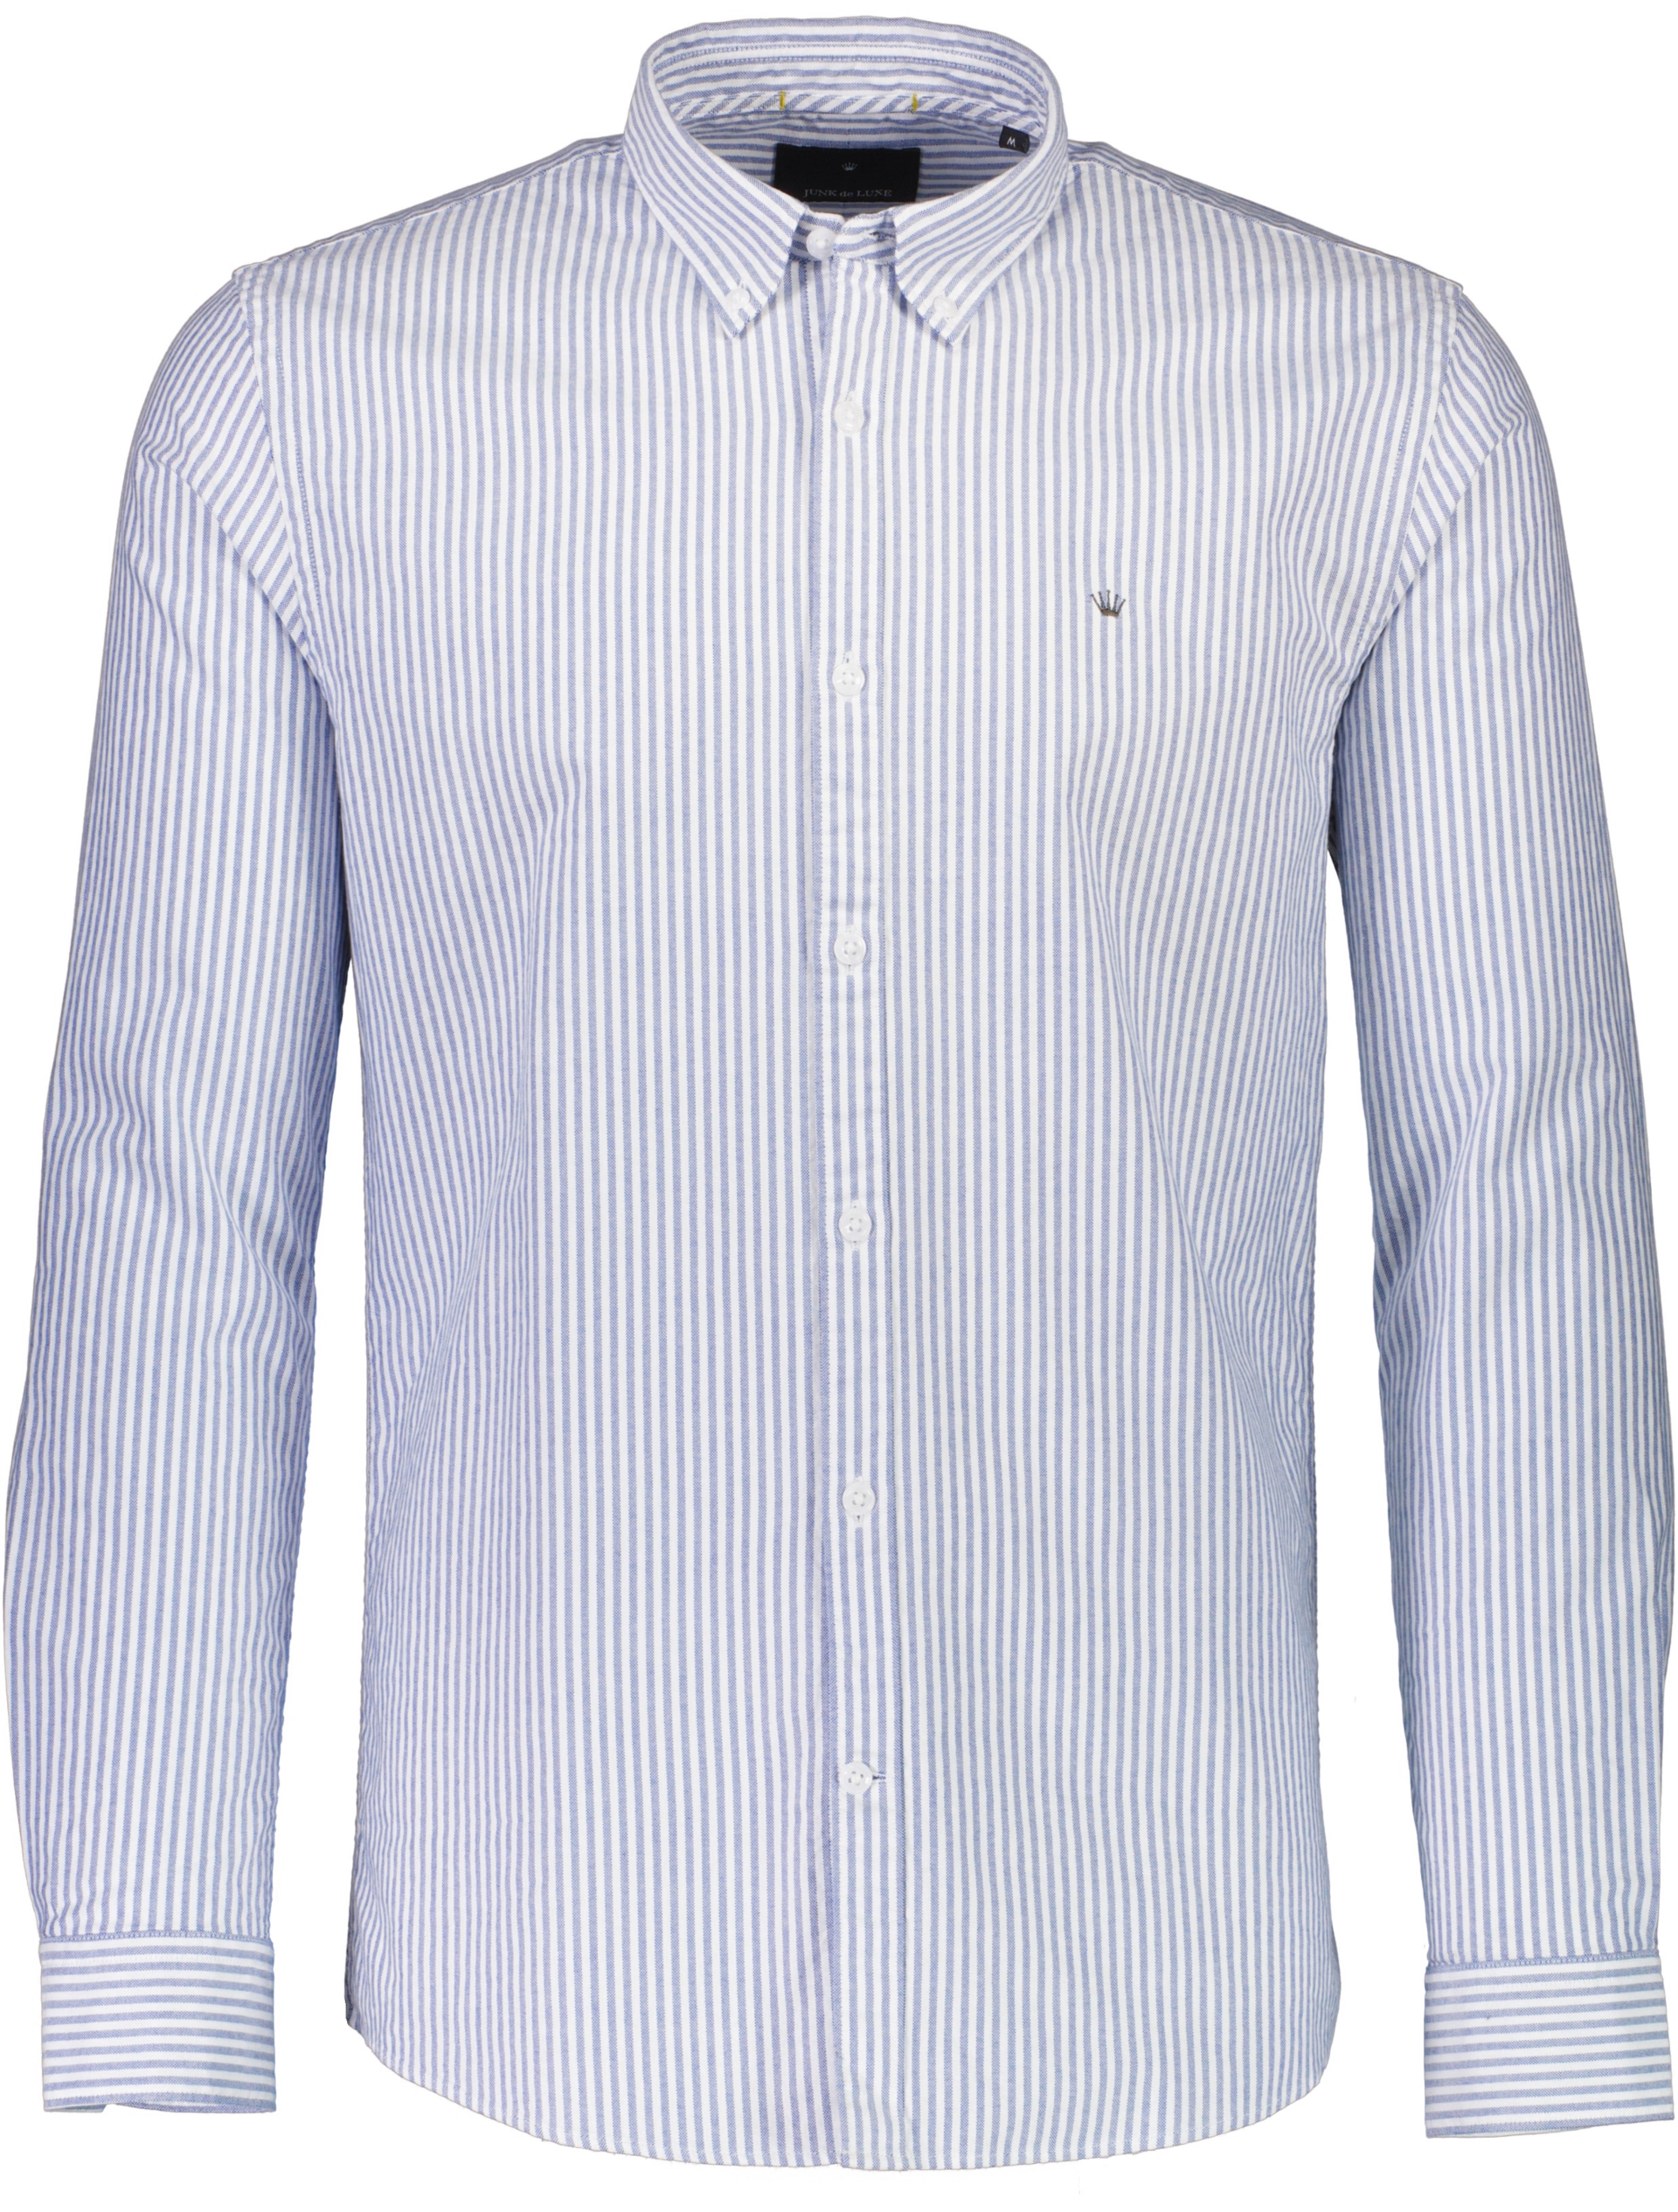 Junk de Luxe Oxford shirt blue / navy stripe